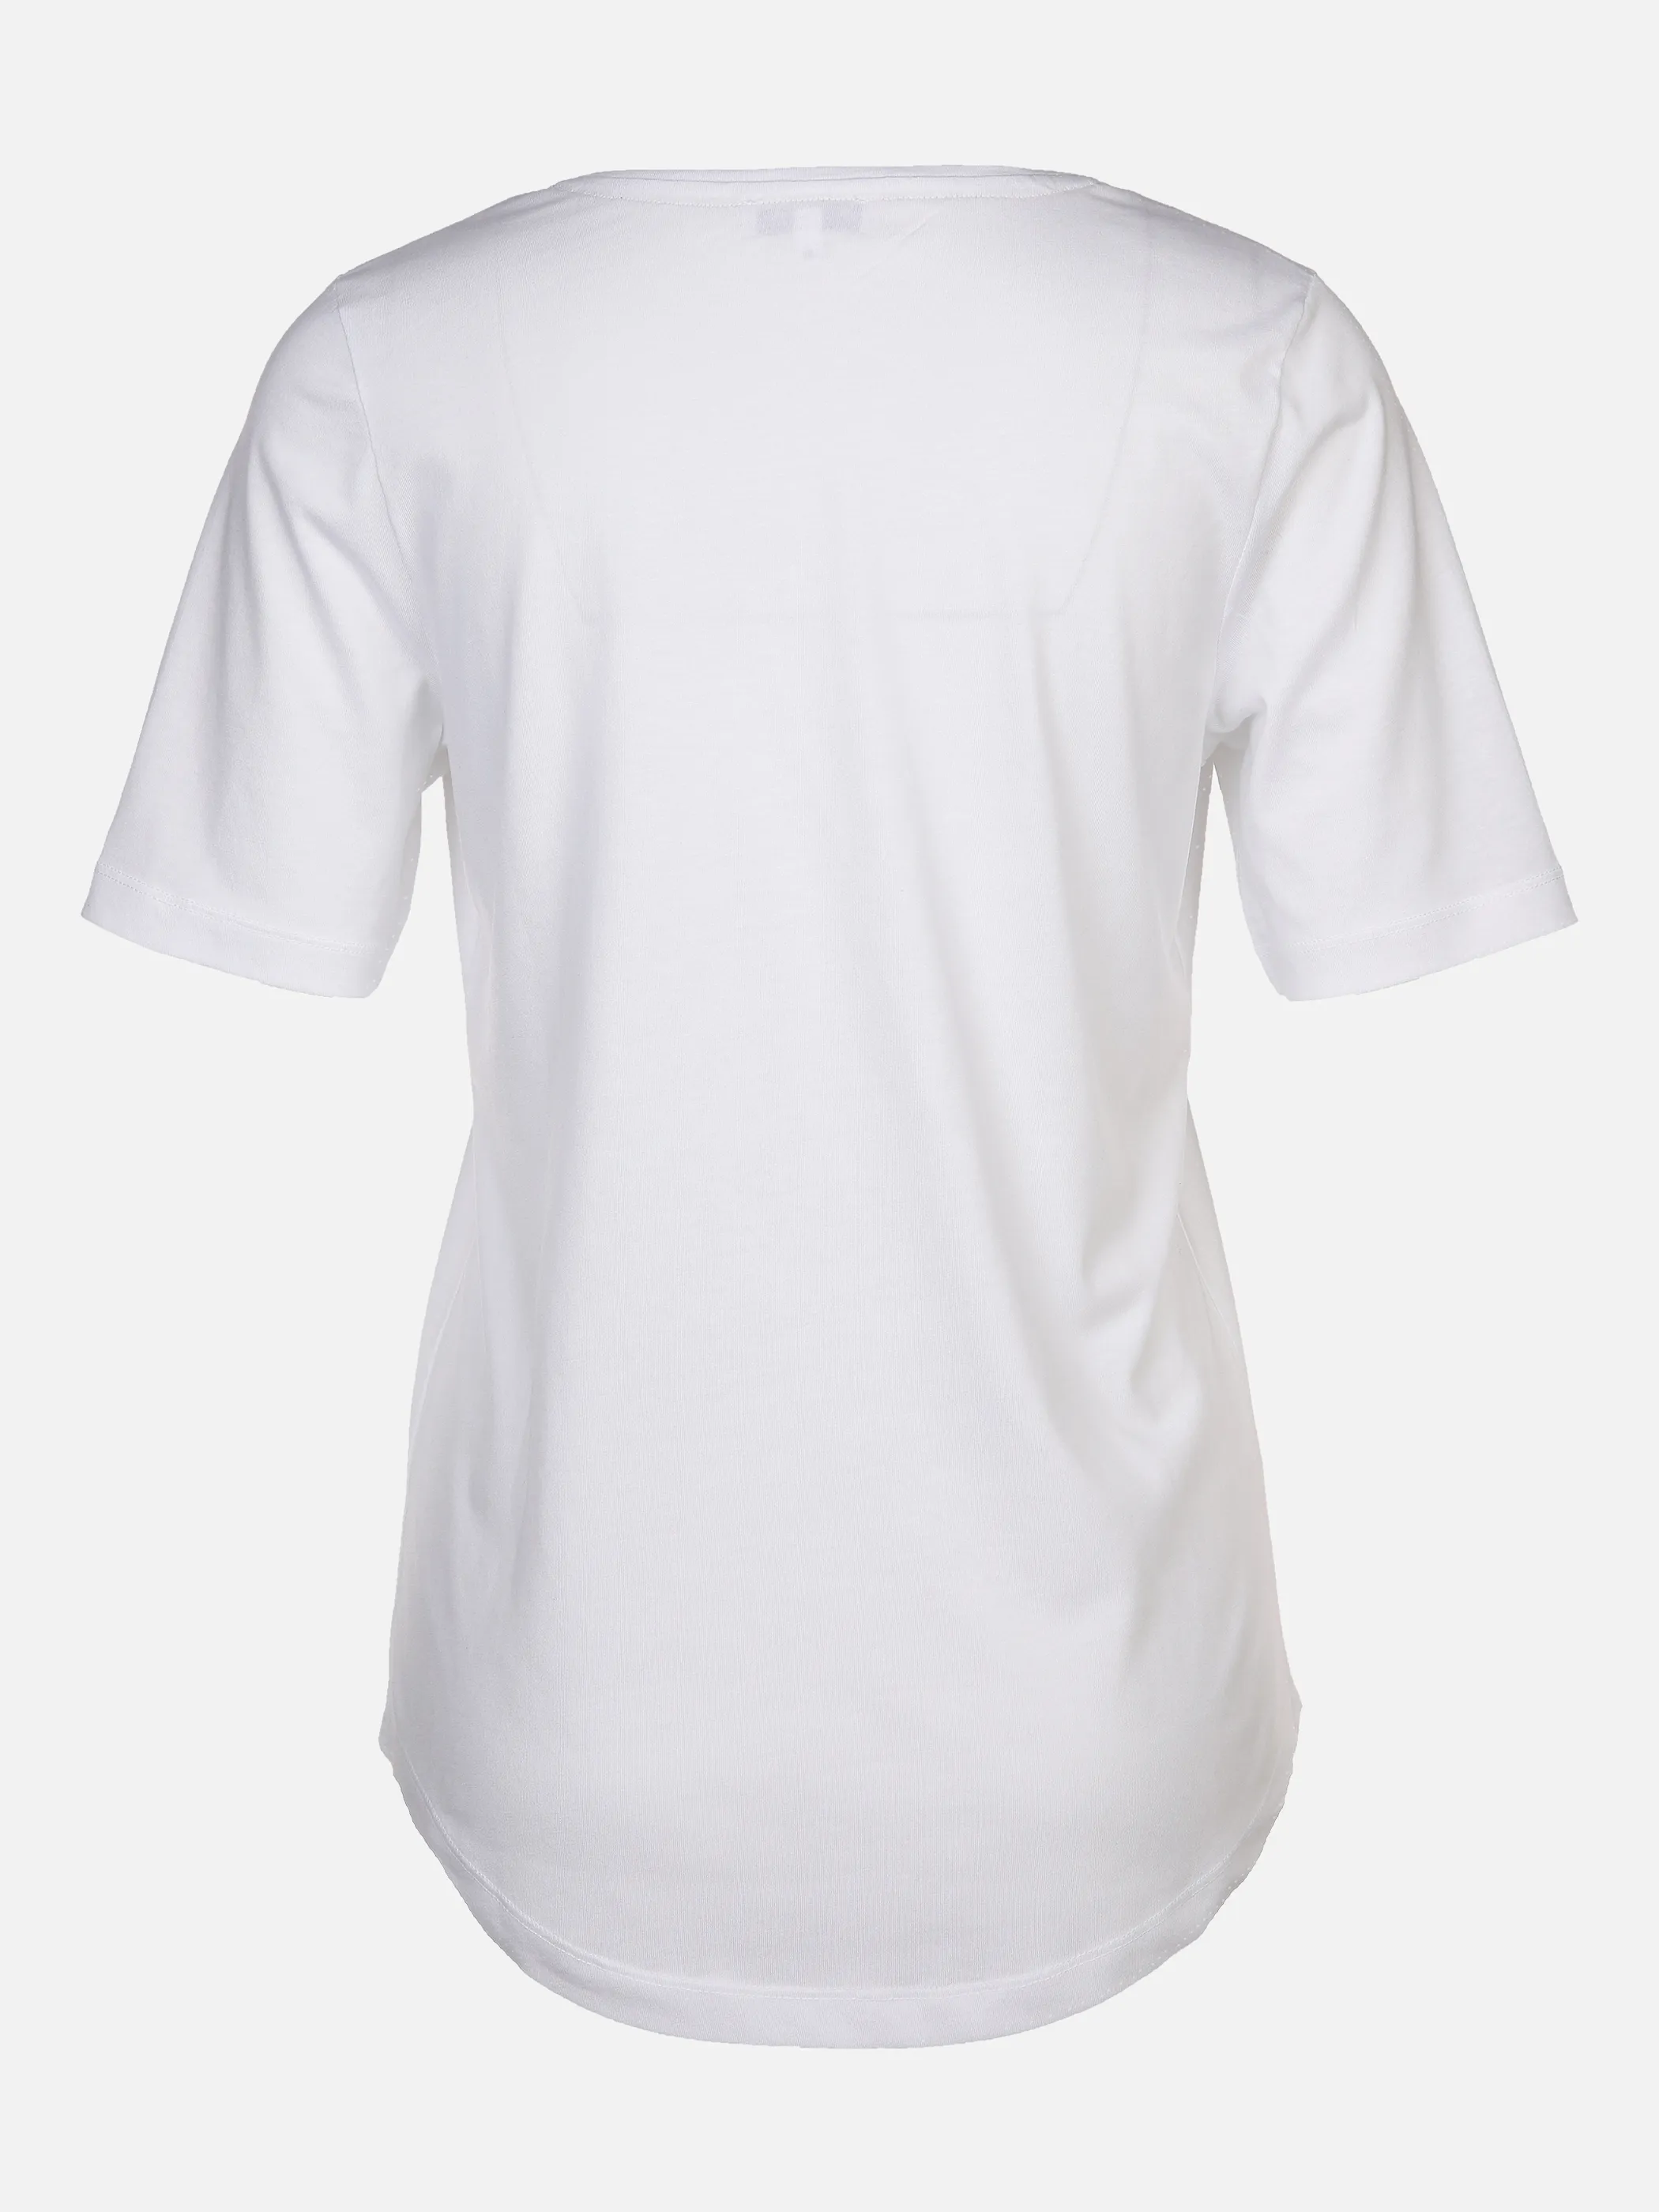 Lisa Tossa Da-T-Shirt m. Frontprint Weiß 878570 WEIß 2